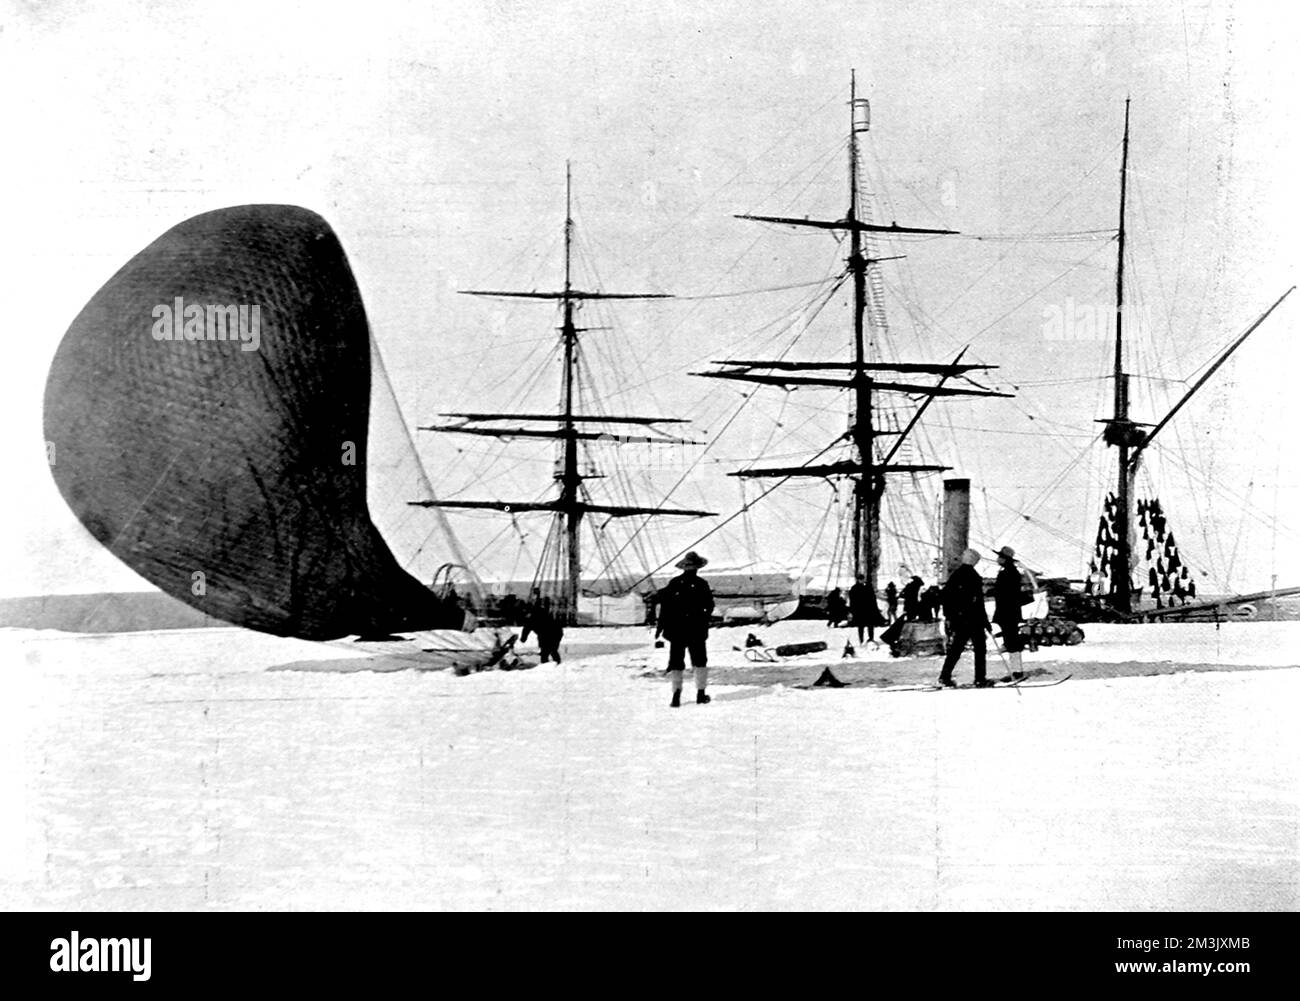 Fotografia che mostra i membri della spedizione nazionale antartica del 1901-4 che sgonfiano un pallone a idrogeno, con la nave di ricerca polare 'Discovery' sullo sfondo, Antartico, 4th febbraio 1902. Questa fu la fine del primo volo in mongolfiera, ad un'altezza di 750 metri, intrapreso nell'Antartide. Data: 1903 Foto Stock